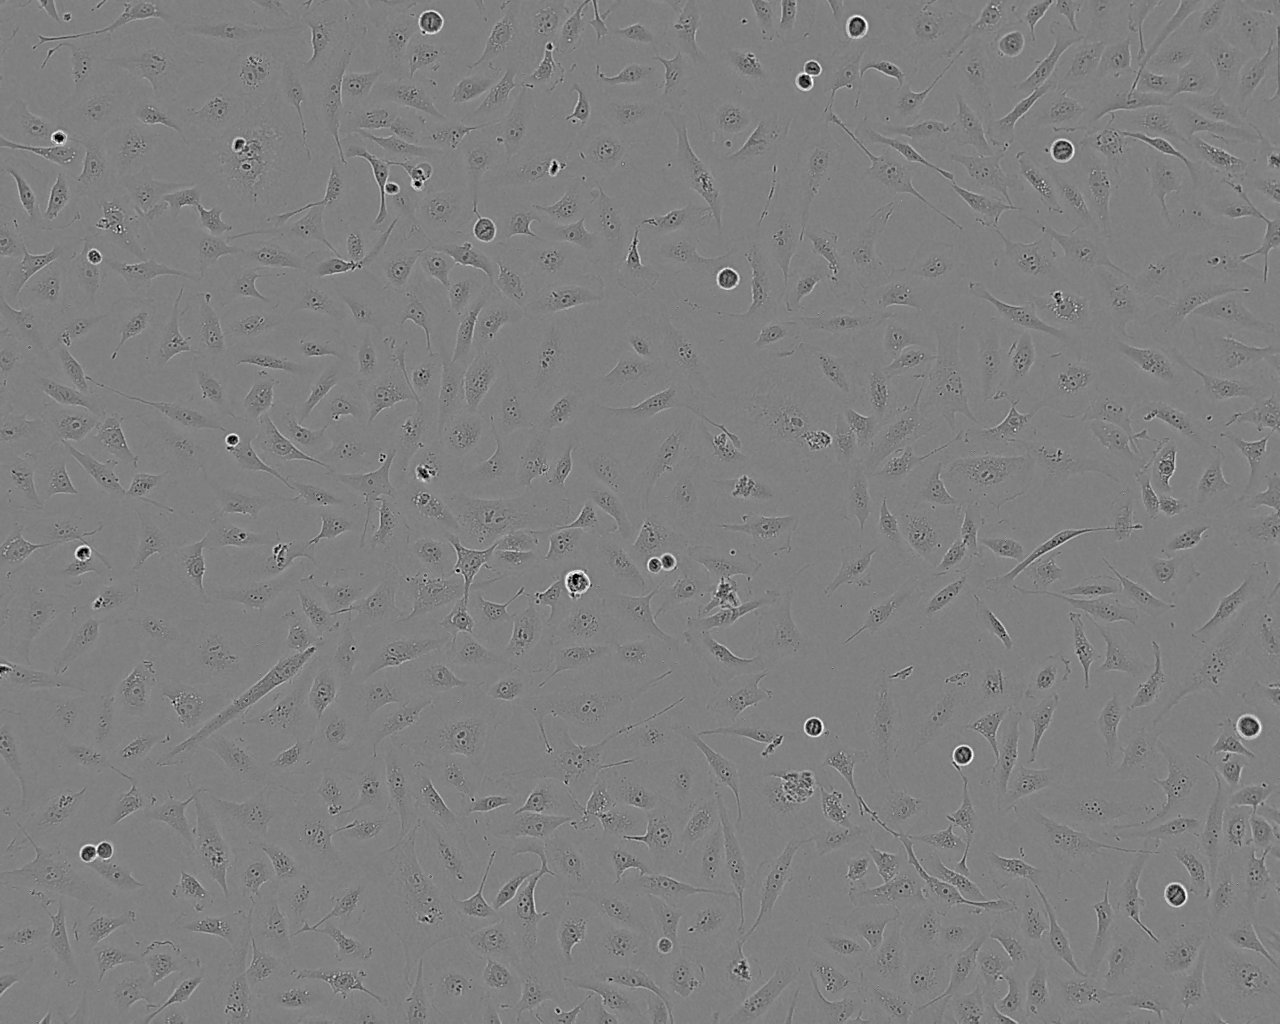 TJ905 Cell:人胶质瘤细胞系,TJ905 Cell